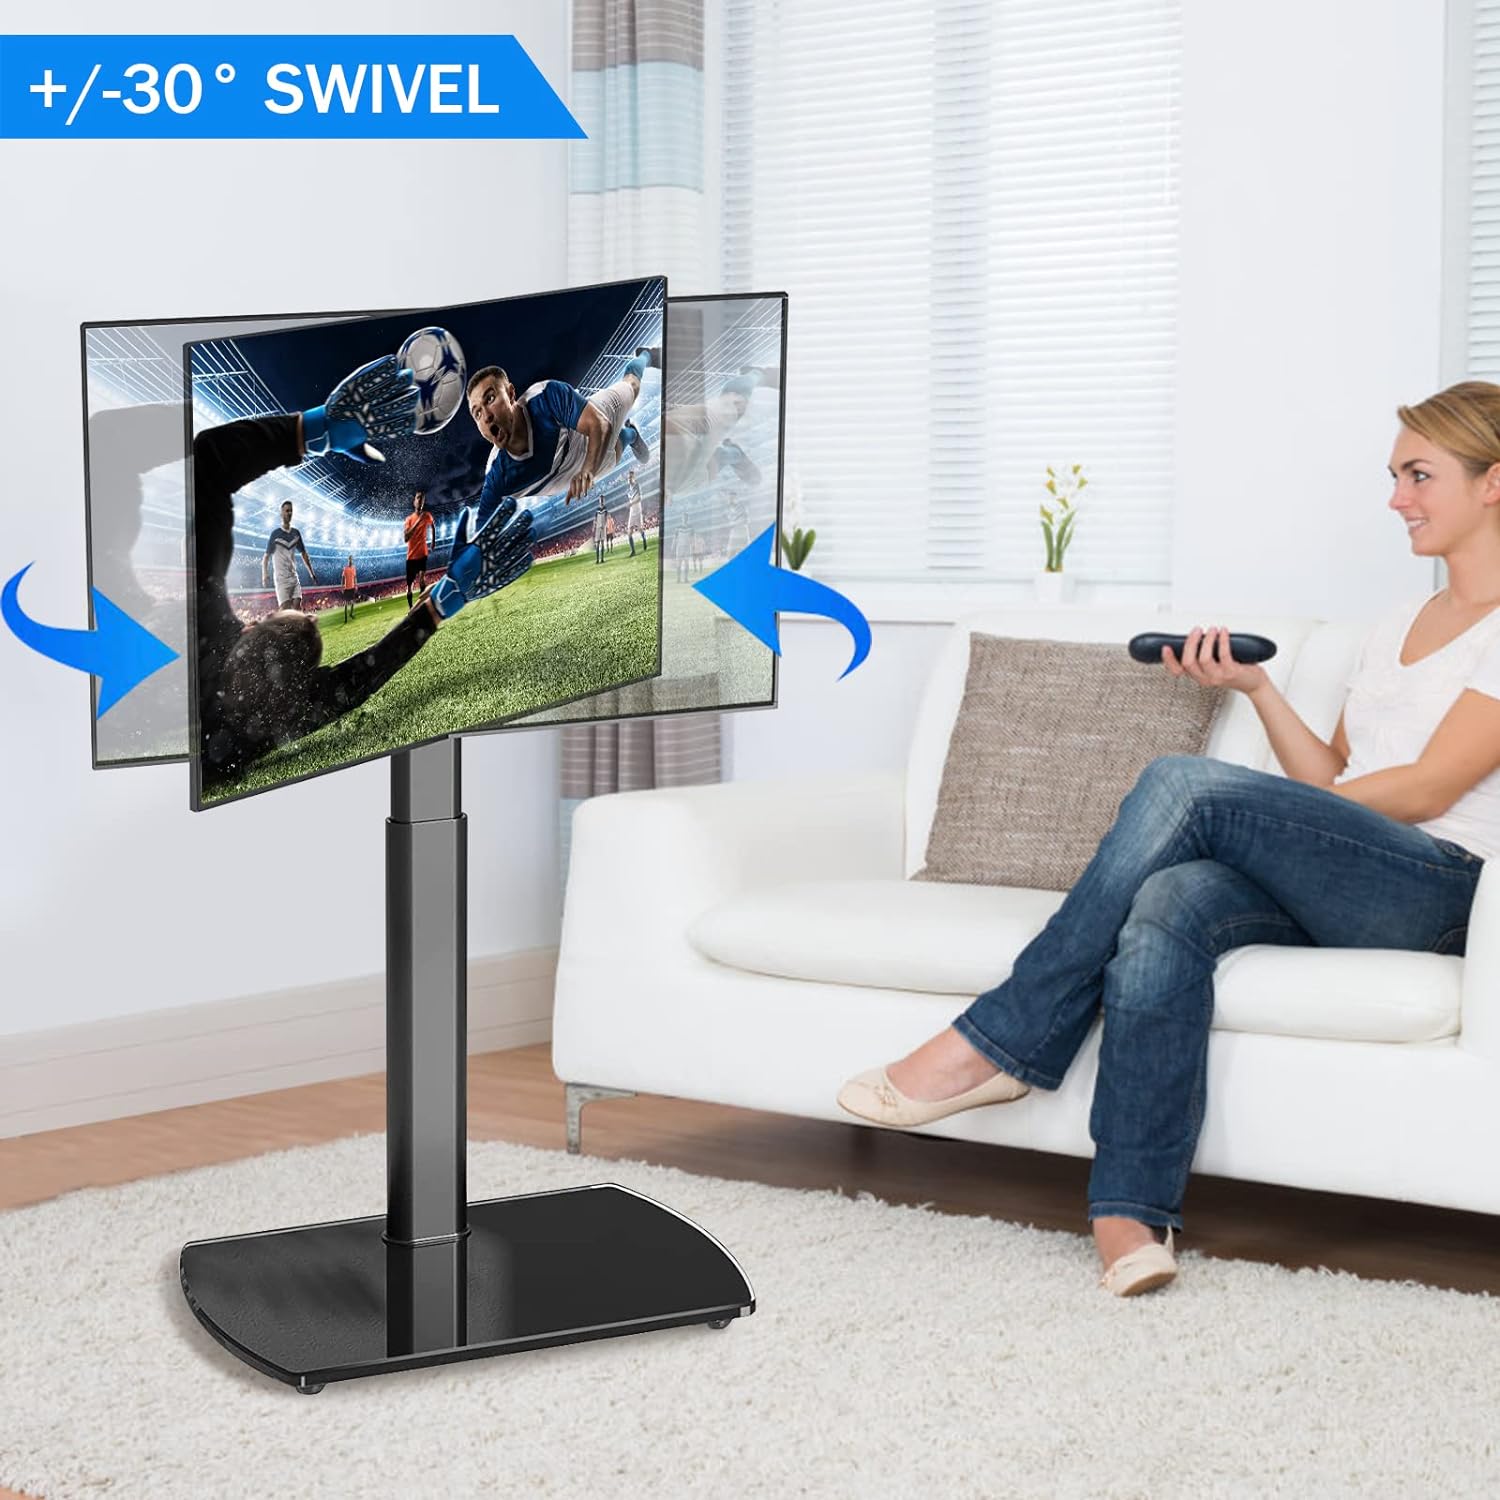 Soporte de TV de suelo con soporte giratorio de altura ajustable unive -  VIRTUAL MUEBLES